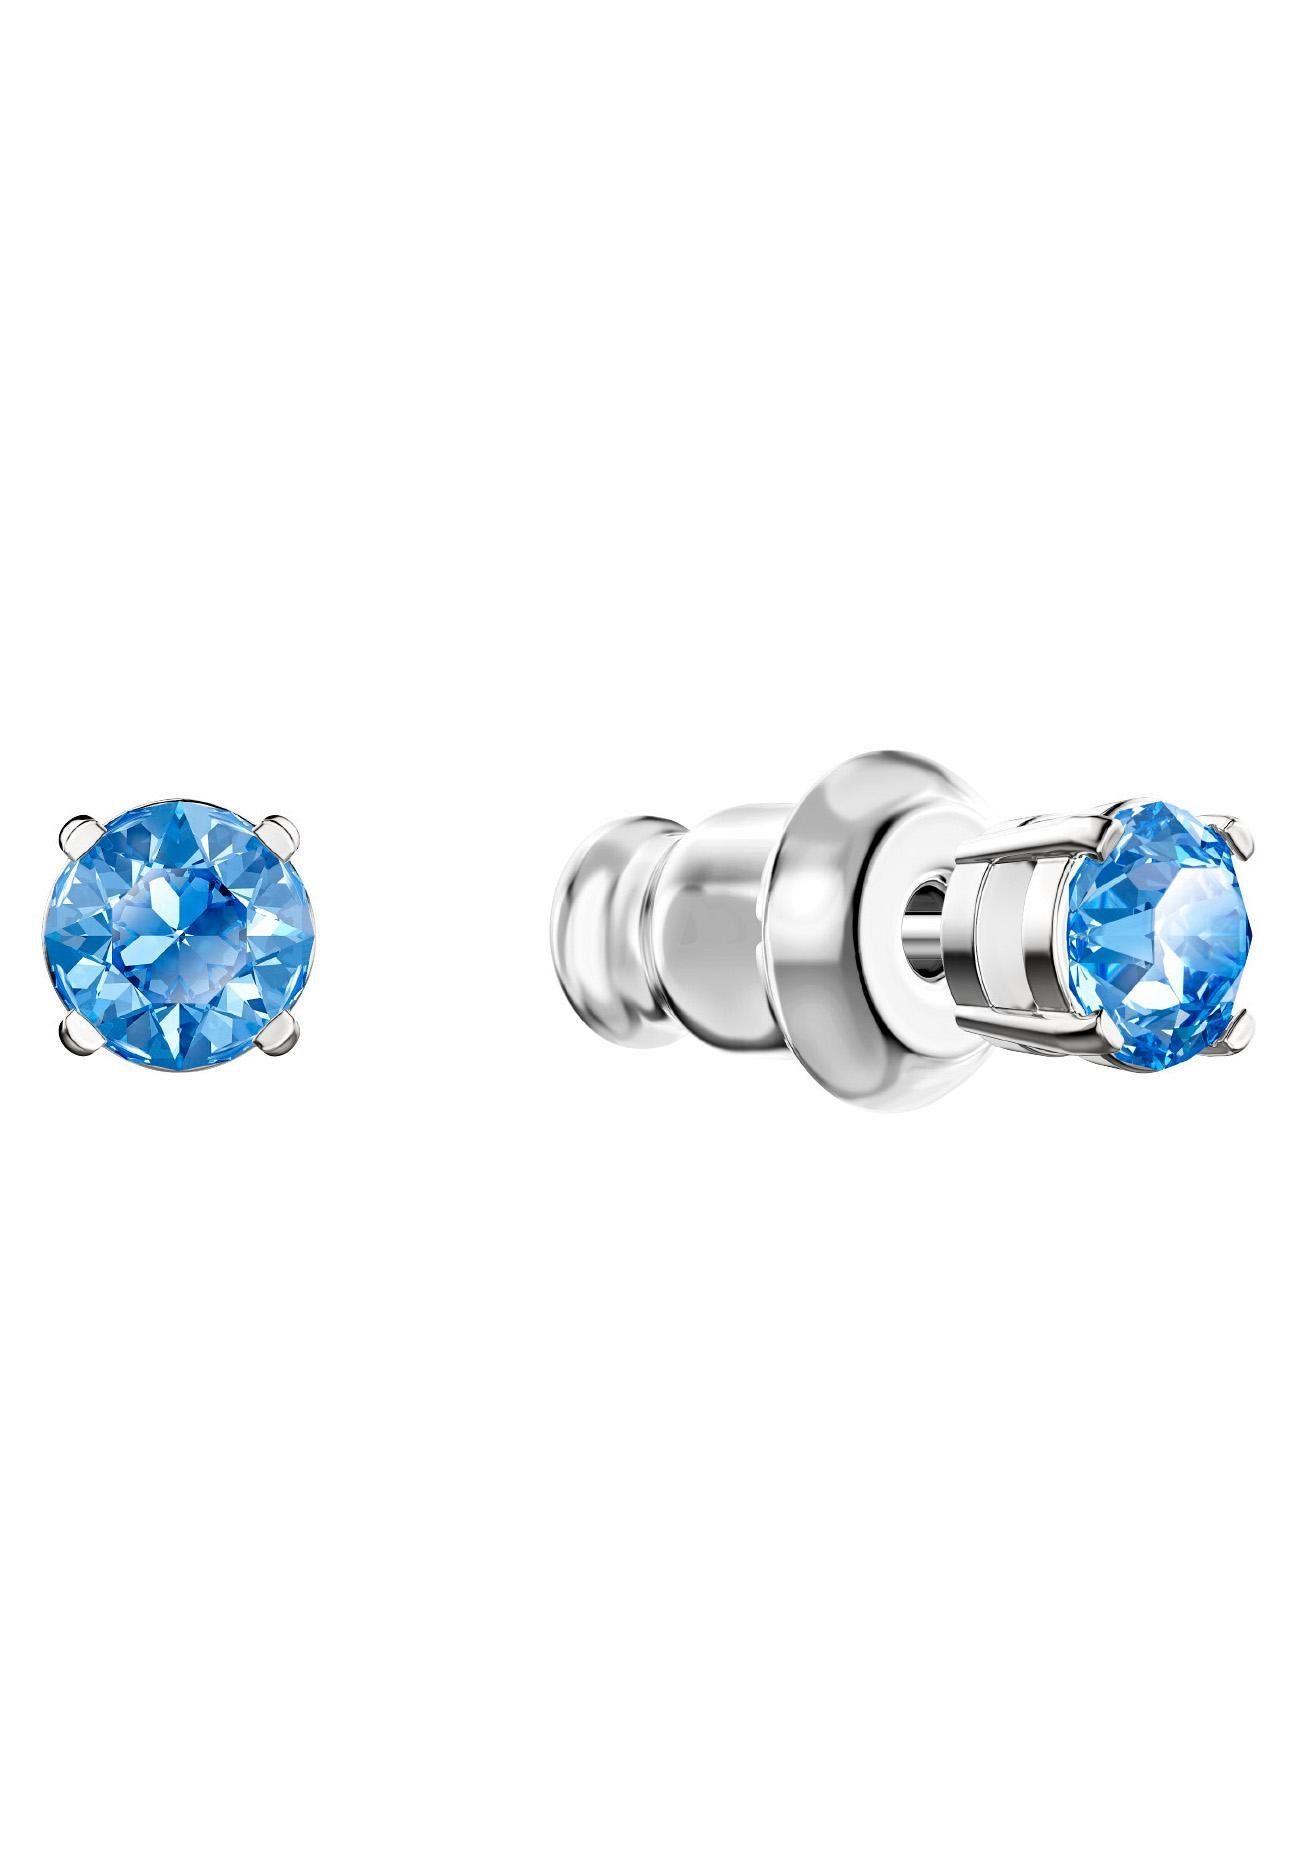 blau, und Ketten Dance Swarovski 5480485 Set Swarovski® Sparkling Round, 3-tlg), mit Kristallen rhodiniert, Ohrring (Set,